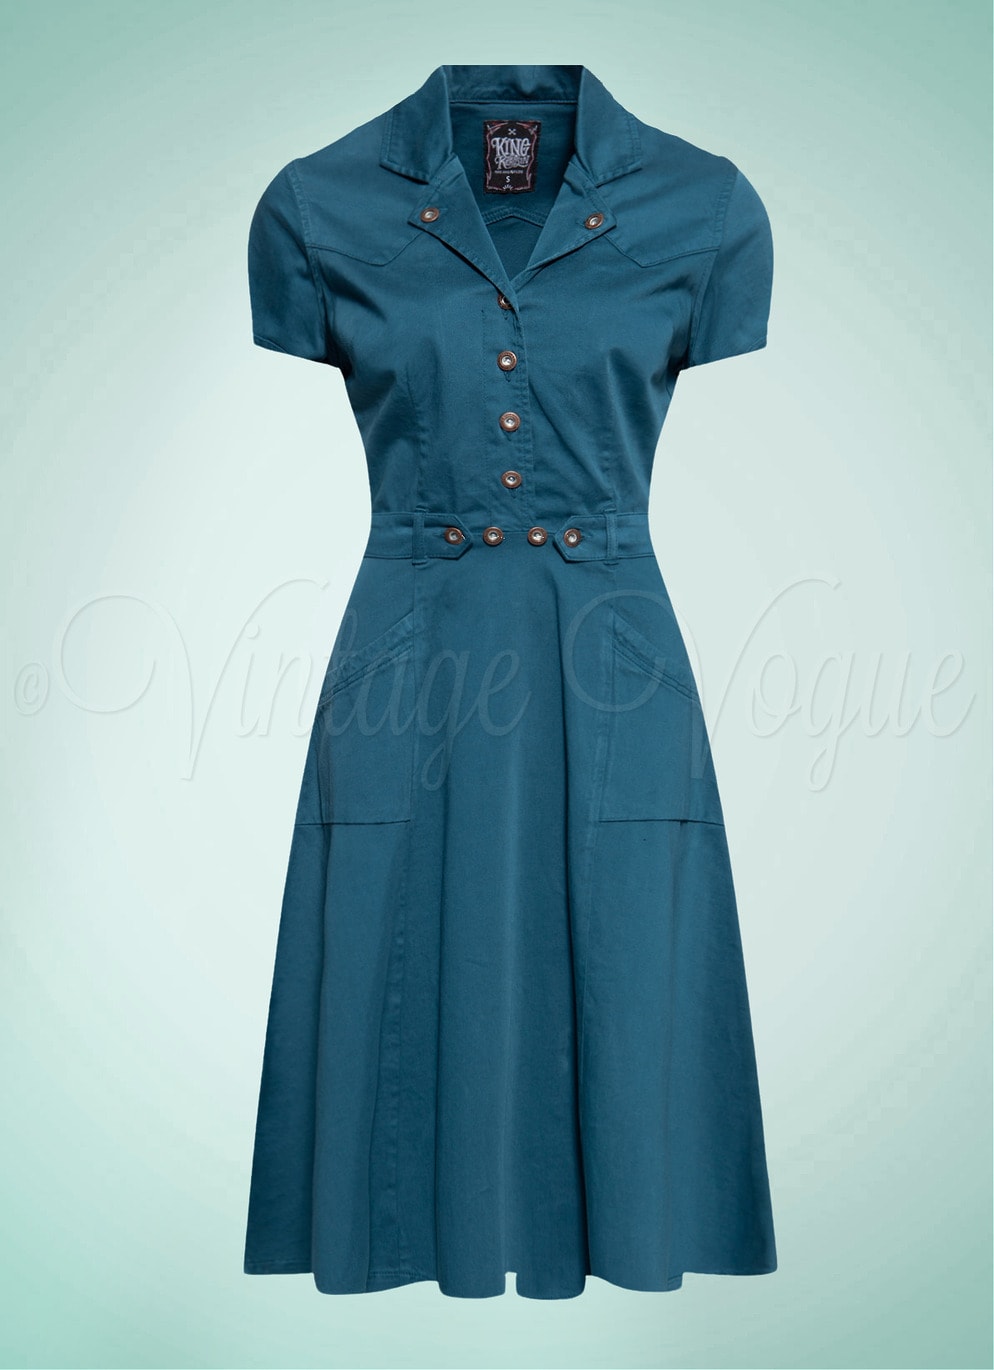 Queen Kerosin 50er Jahre Retro Vintage Rockabilly Jeans Kleid 50's Swing Dress in Petrol QK5201015000-402